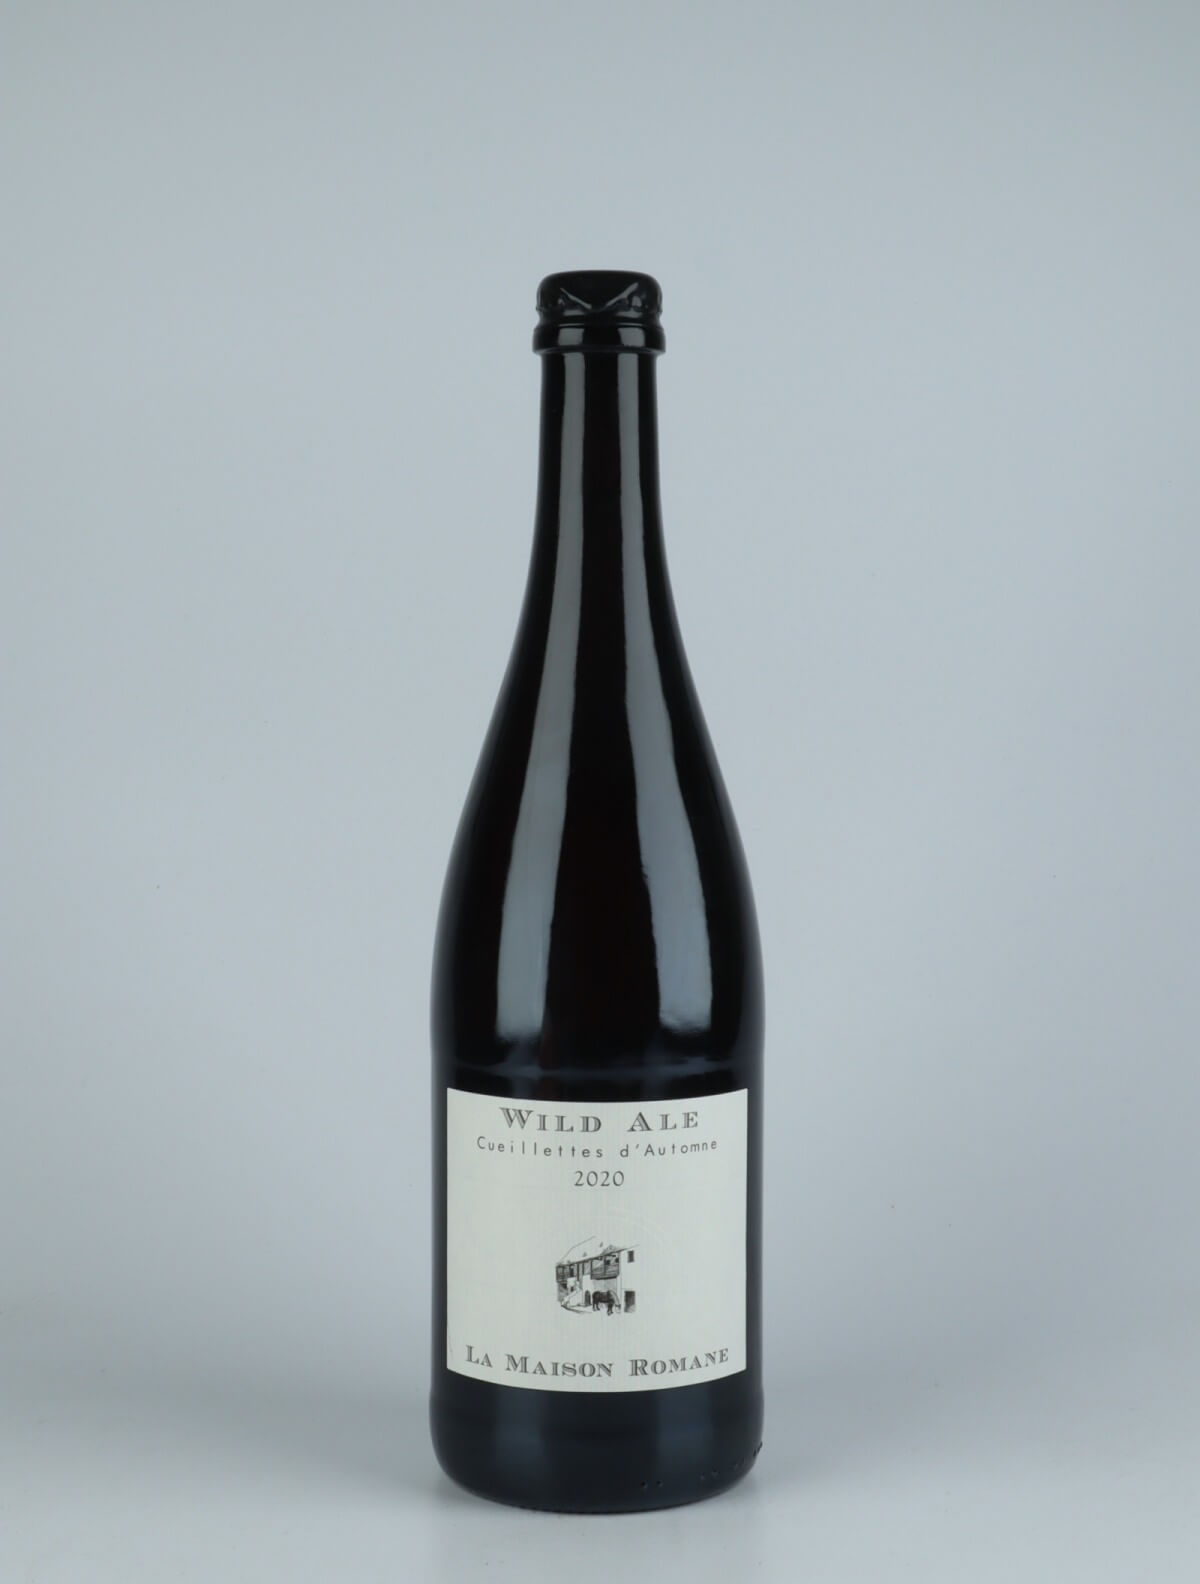 A bottle 2020 Bière Wild Ale - Cueillettes d'Automne Beer from La Maison Romane, Burgundy in France